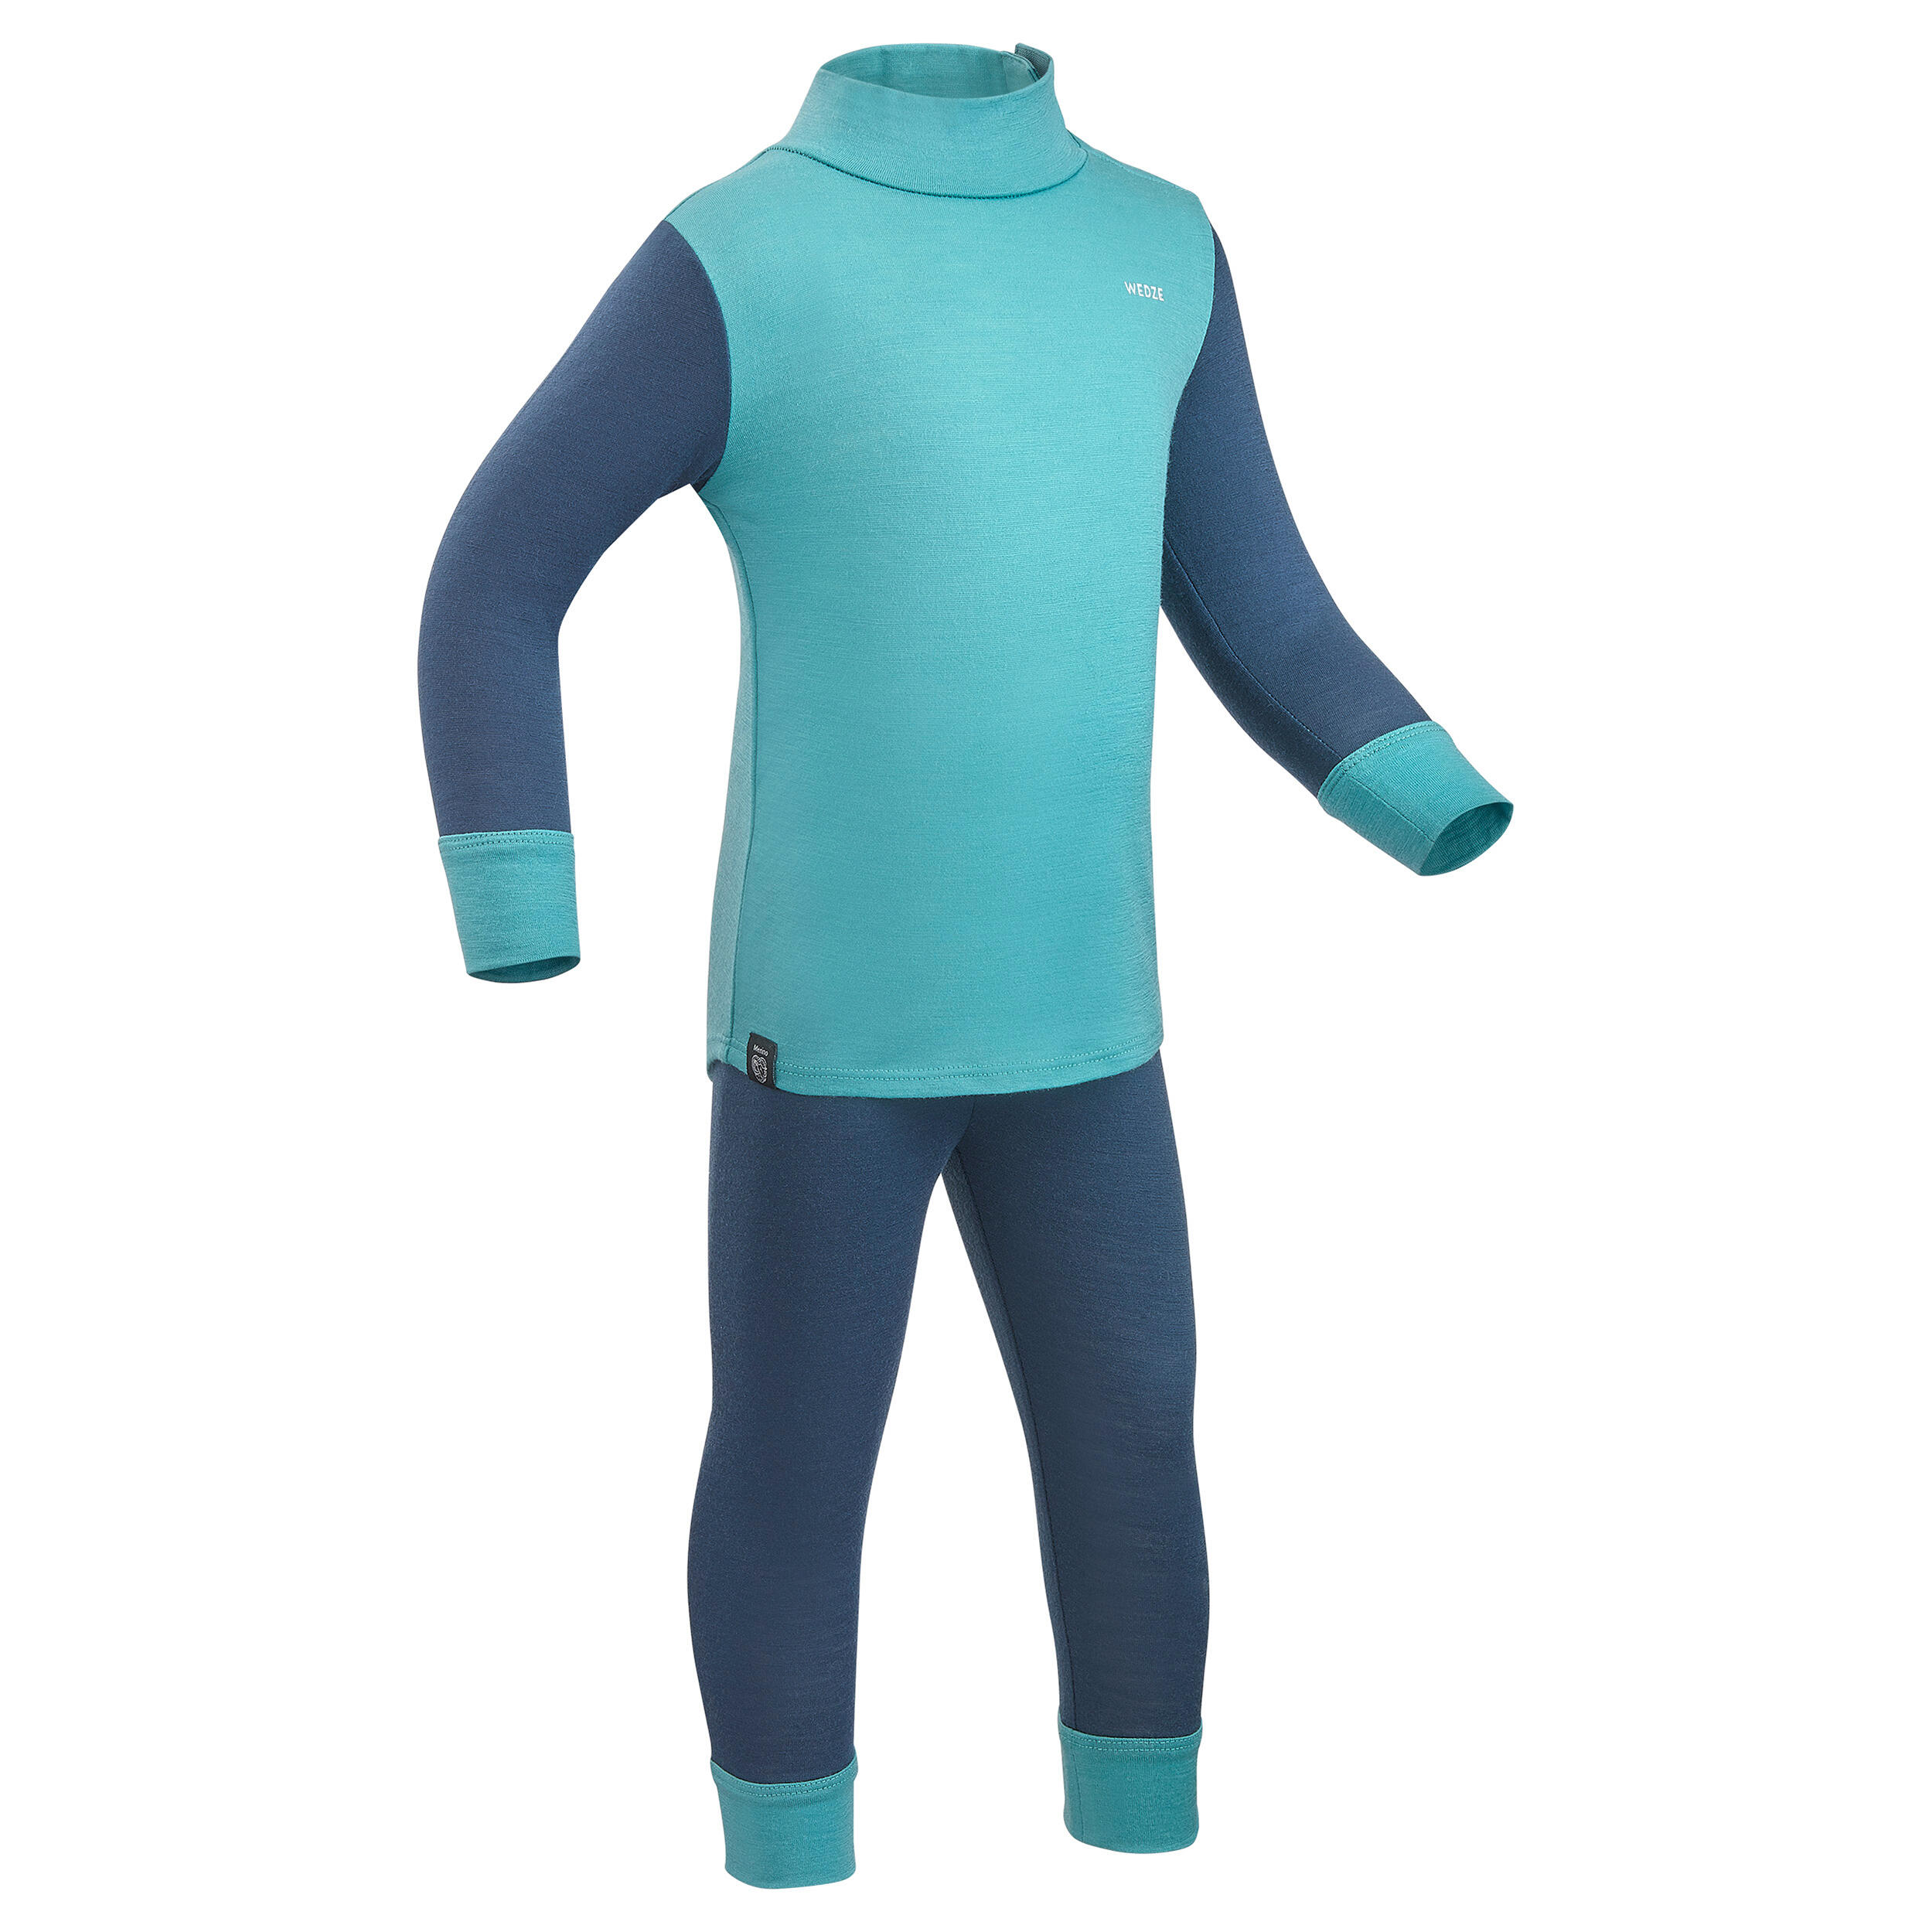 Baby ski base layer top, undershirt merino wool MERIWARM turquoise 8/12